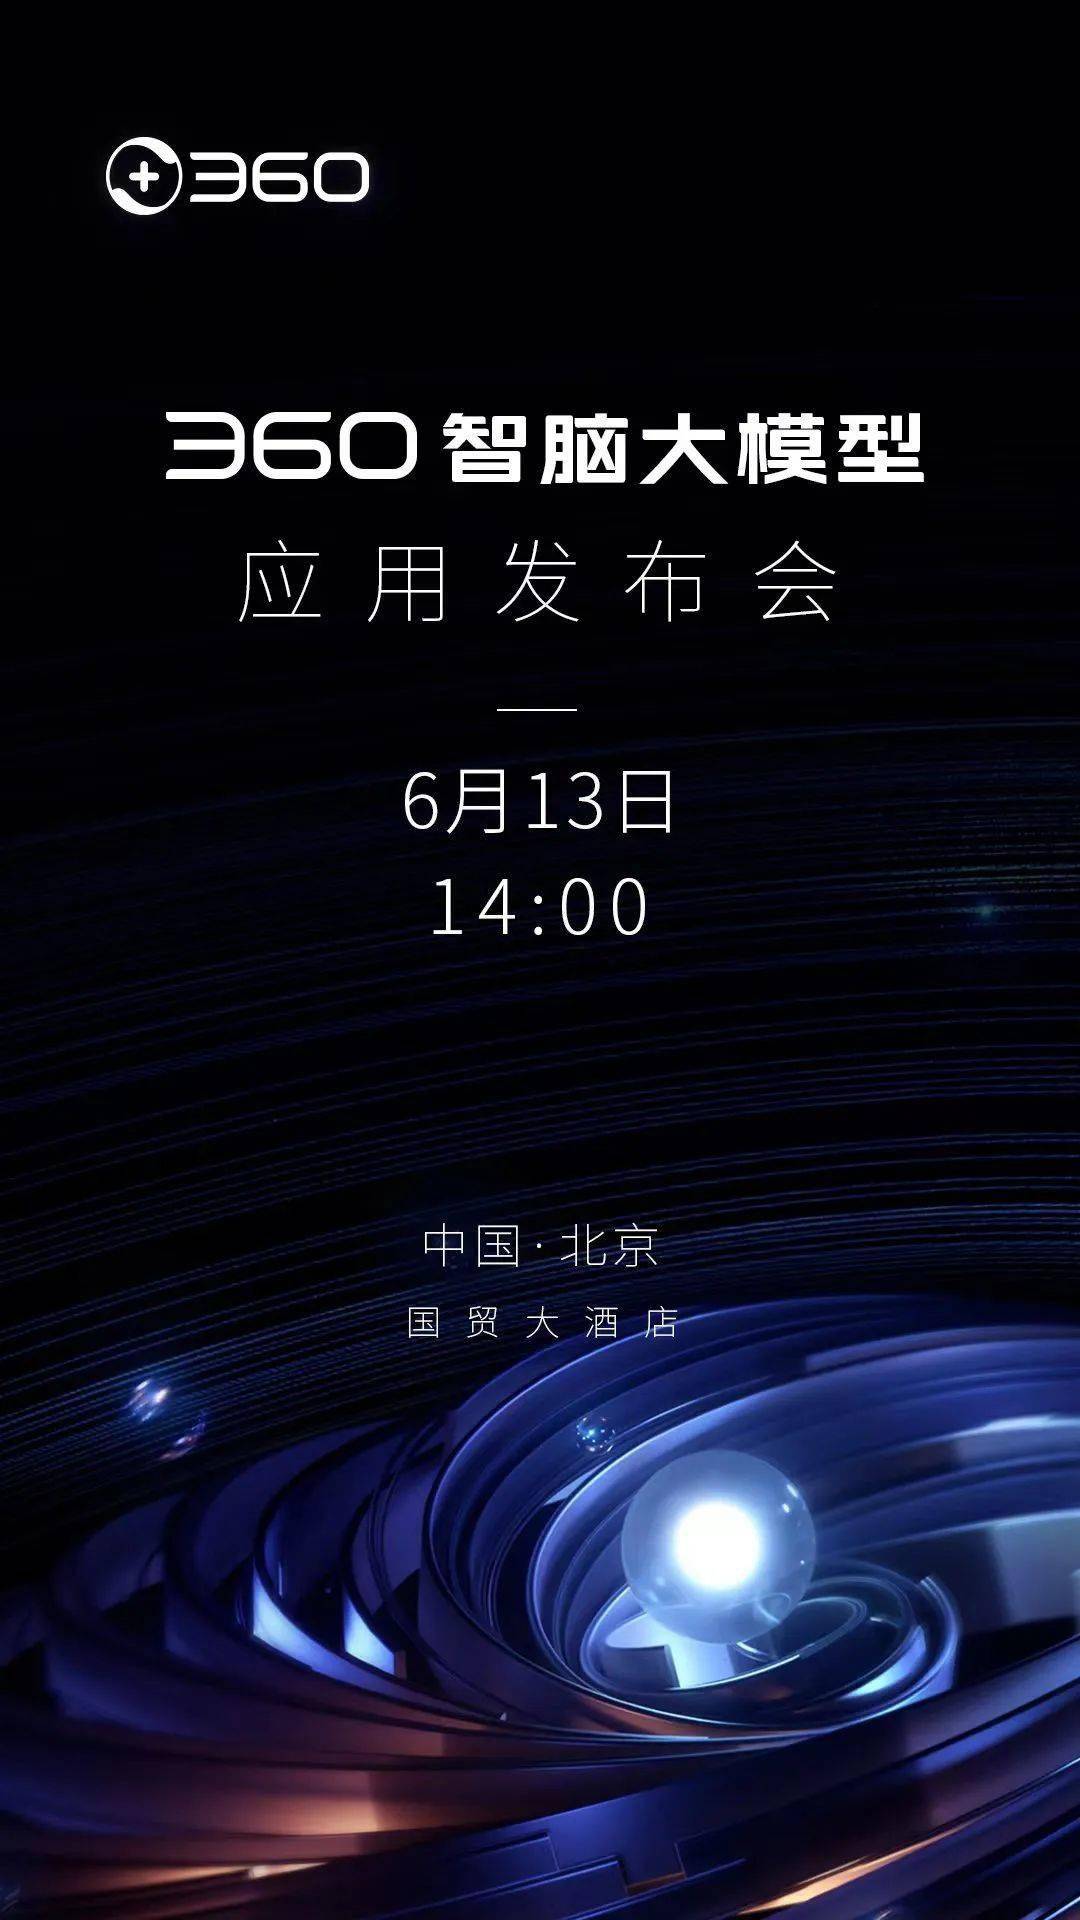 360智脑大模型应用发布会将于6月13日在北京举行